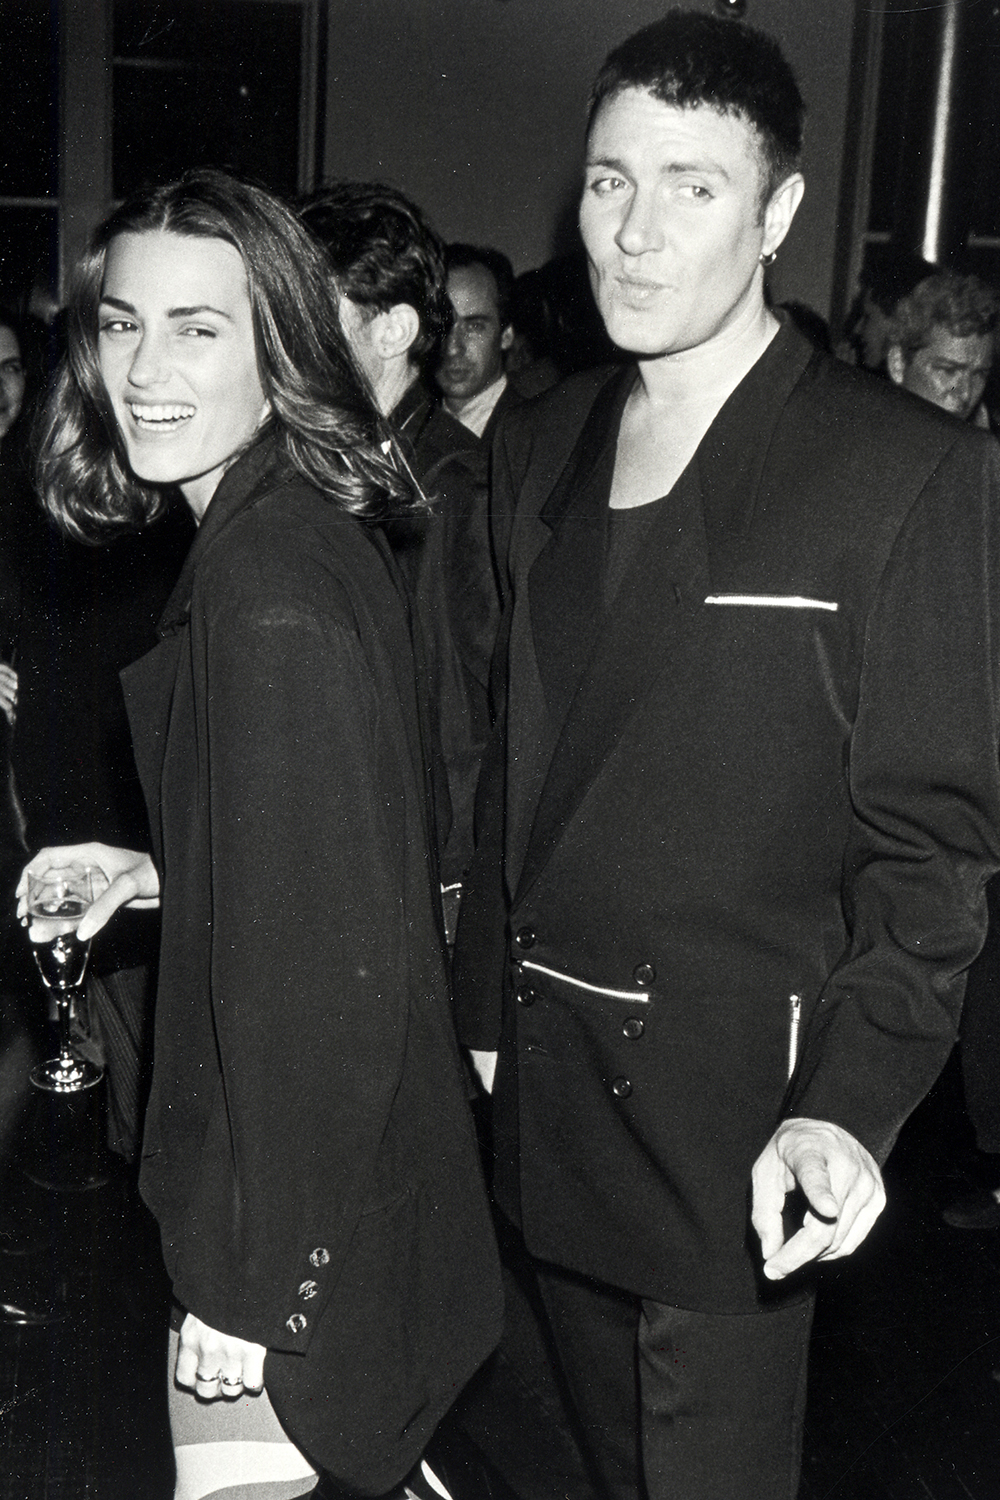 Duran Duran's Simon Le Bon married Yasmin Parvaneh in 1985.